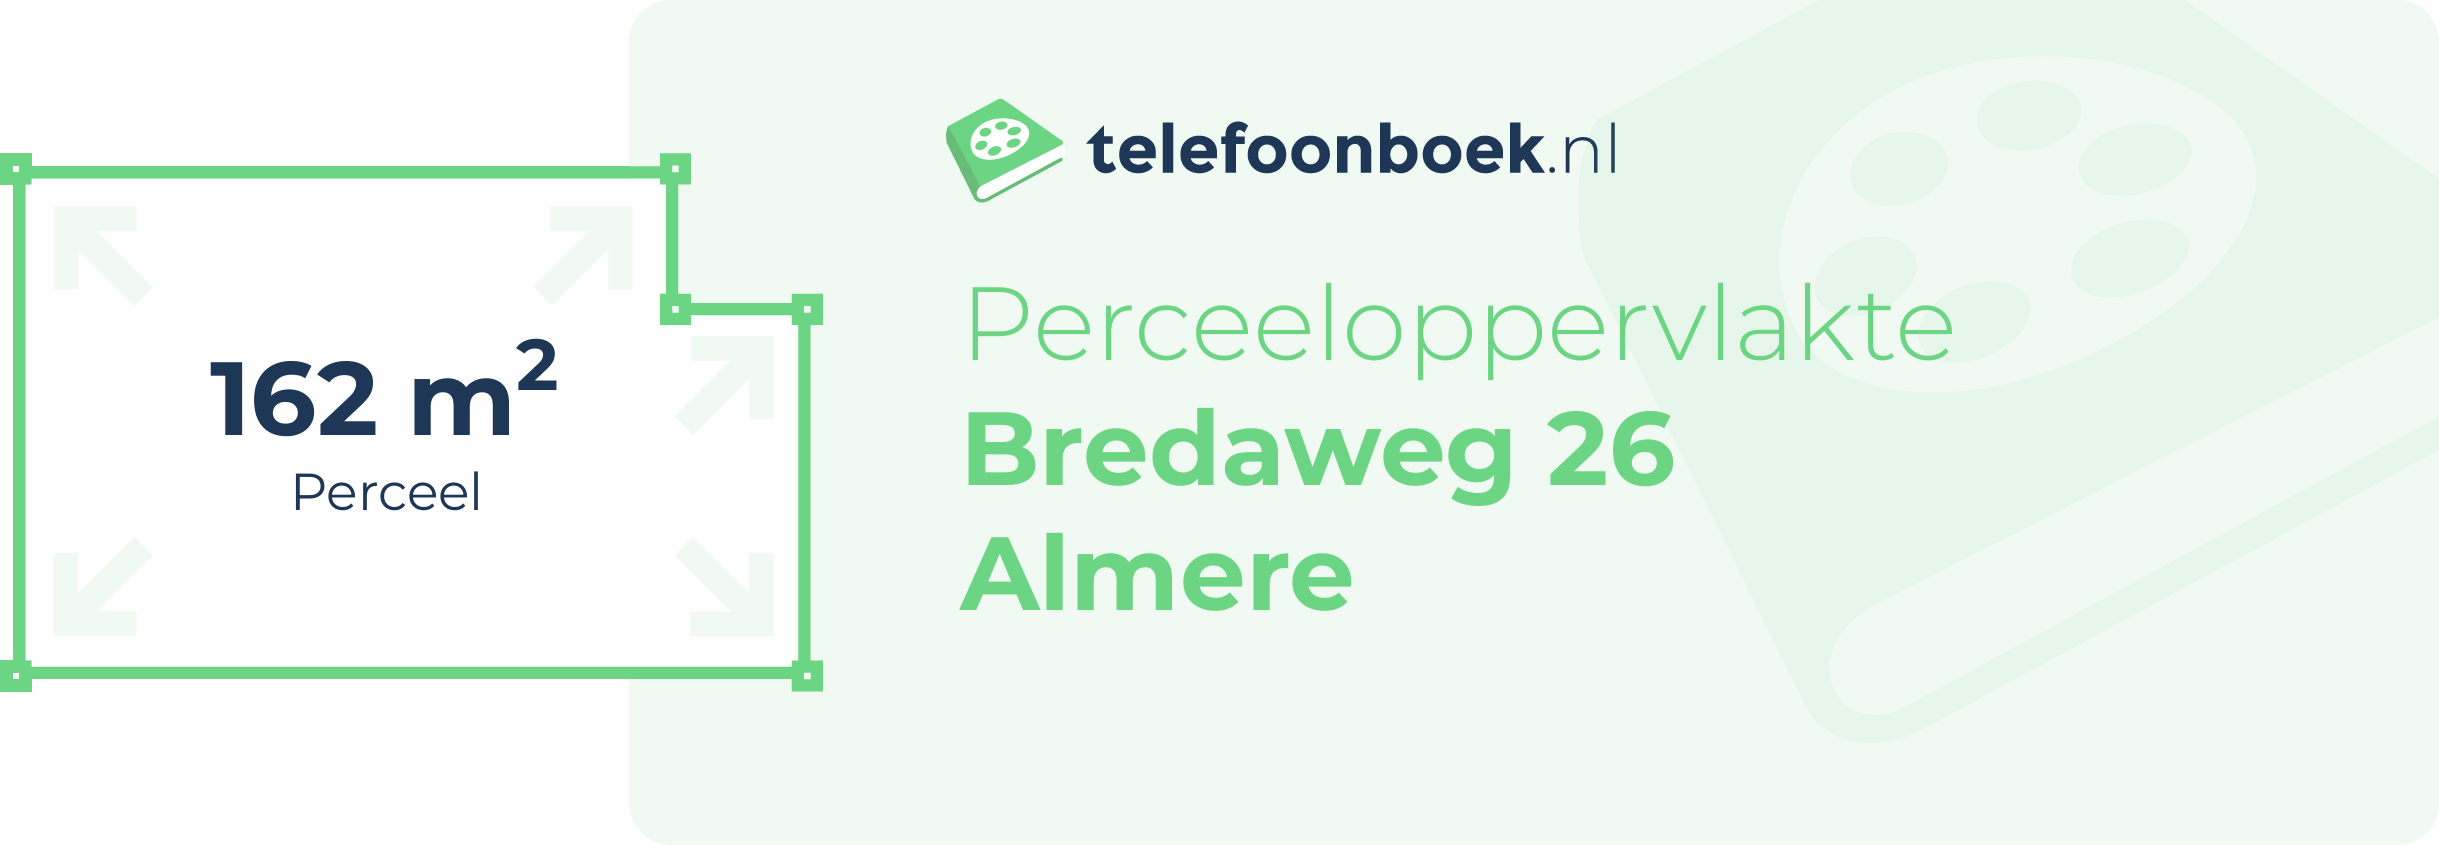 Perceeloppervlakte Bredaweg 26 Almere